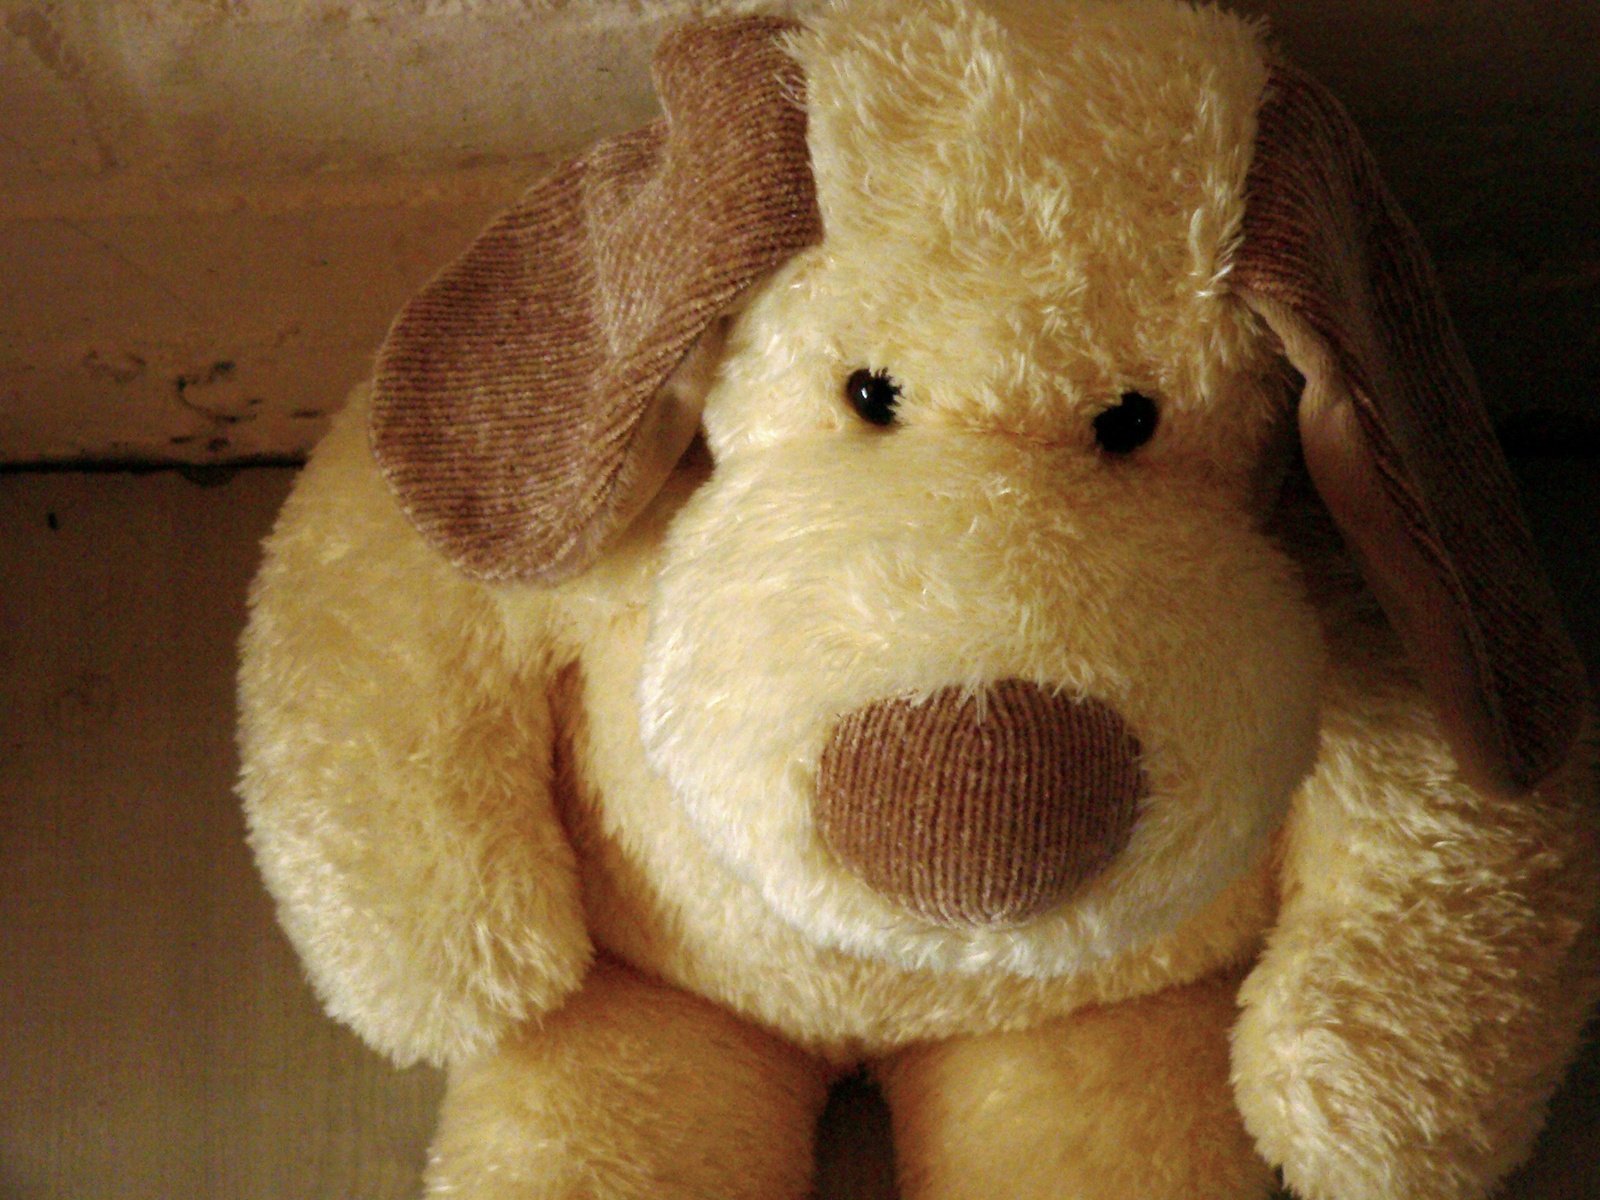 a tan dog shaped stuffed animal on a shelf